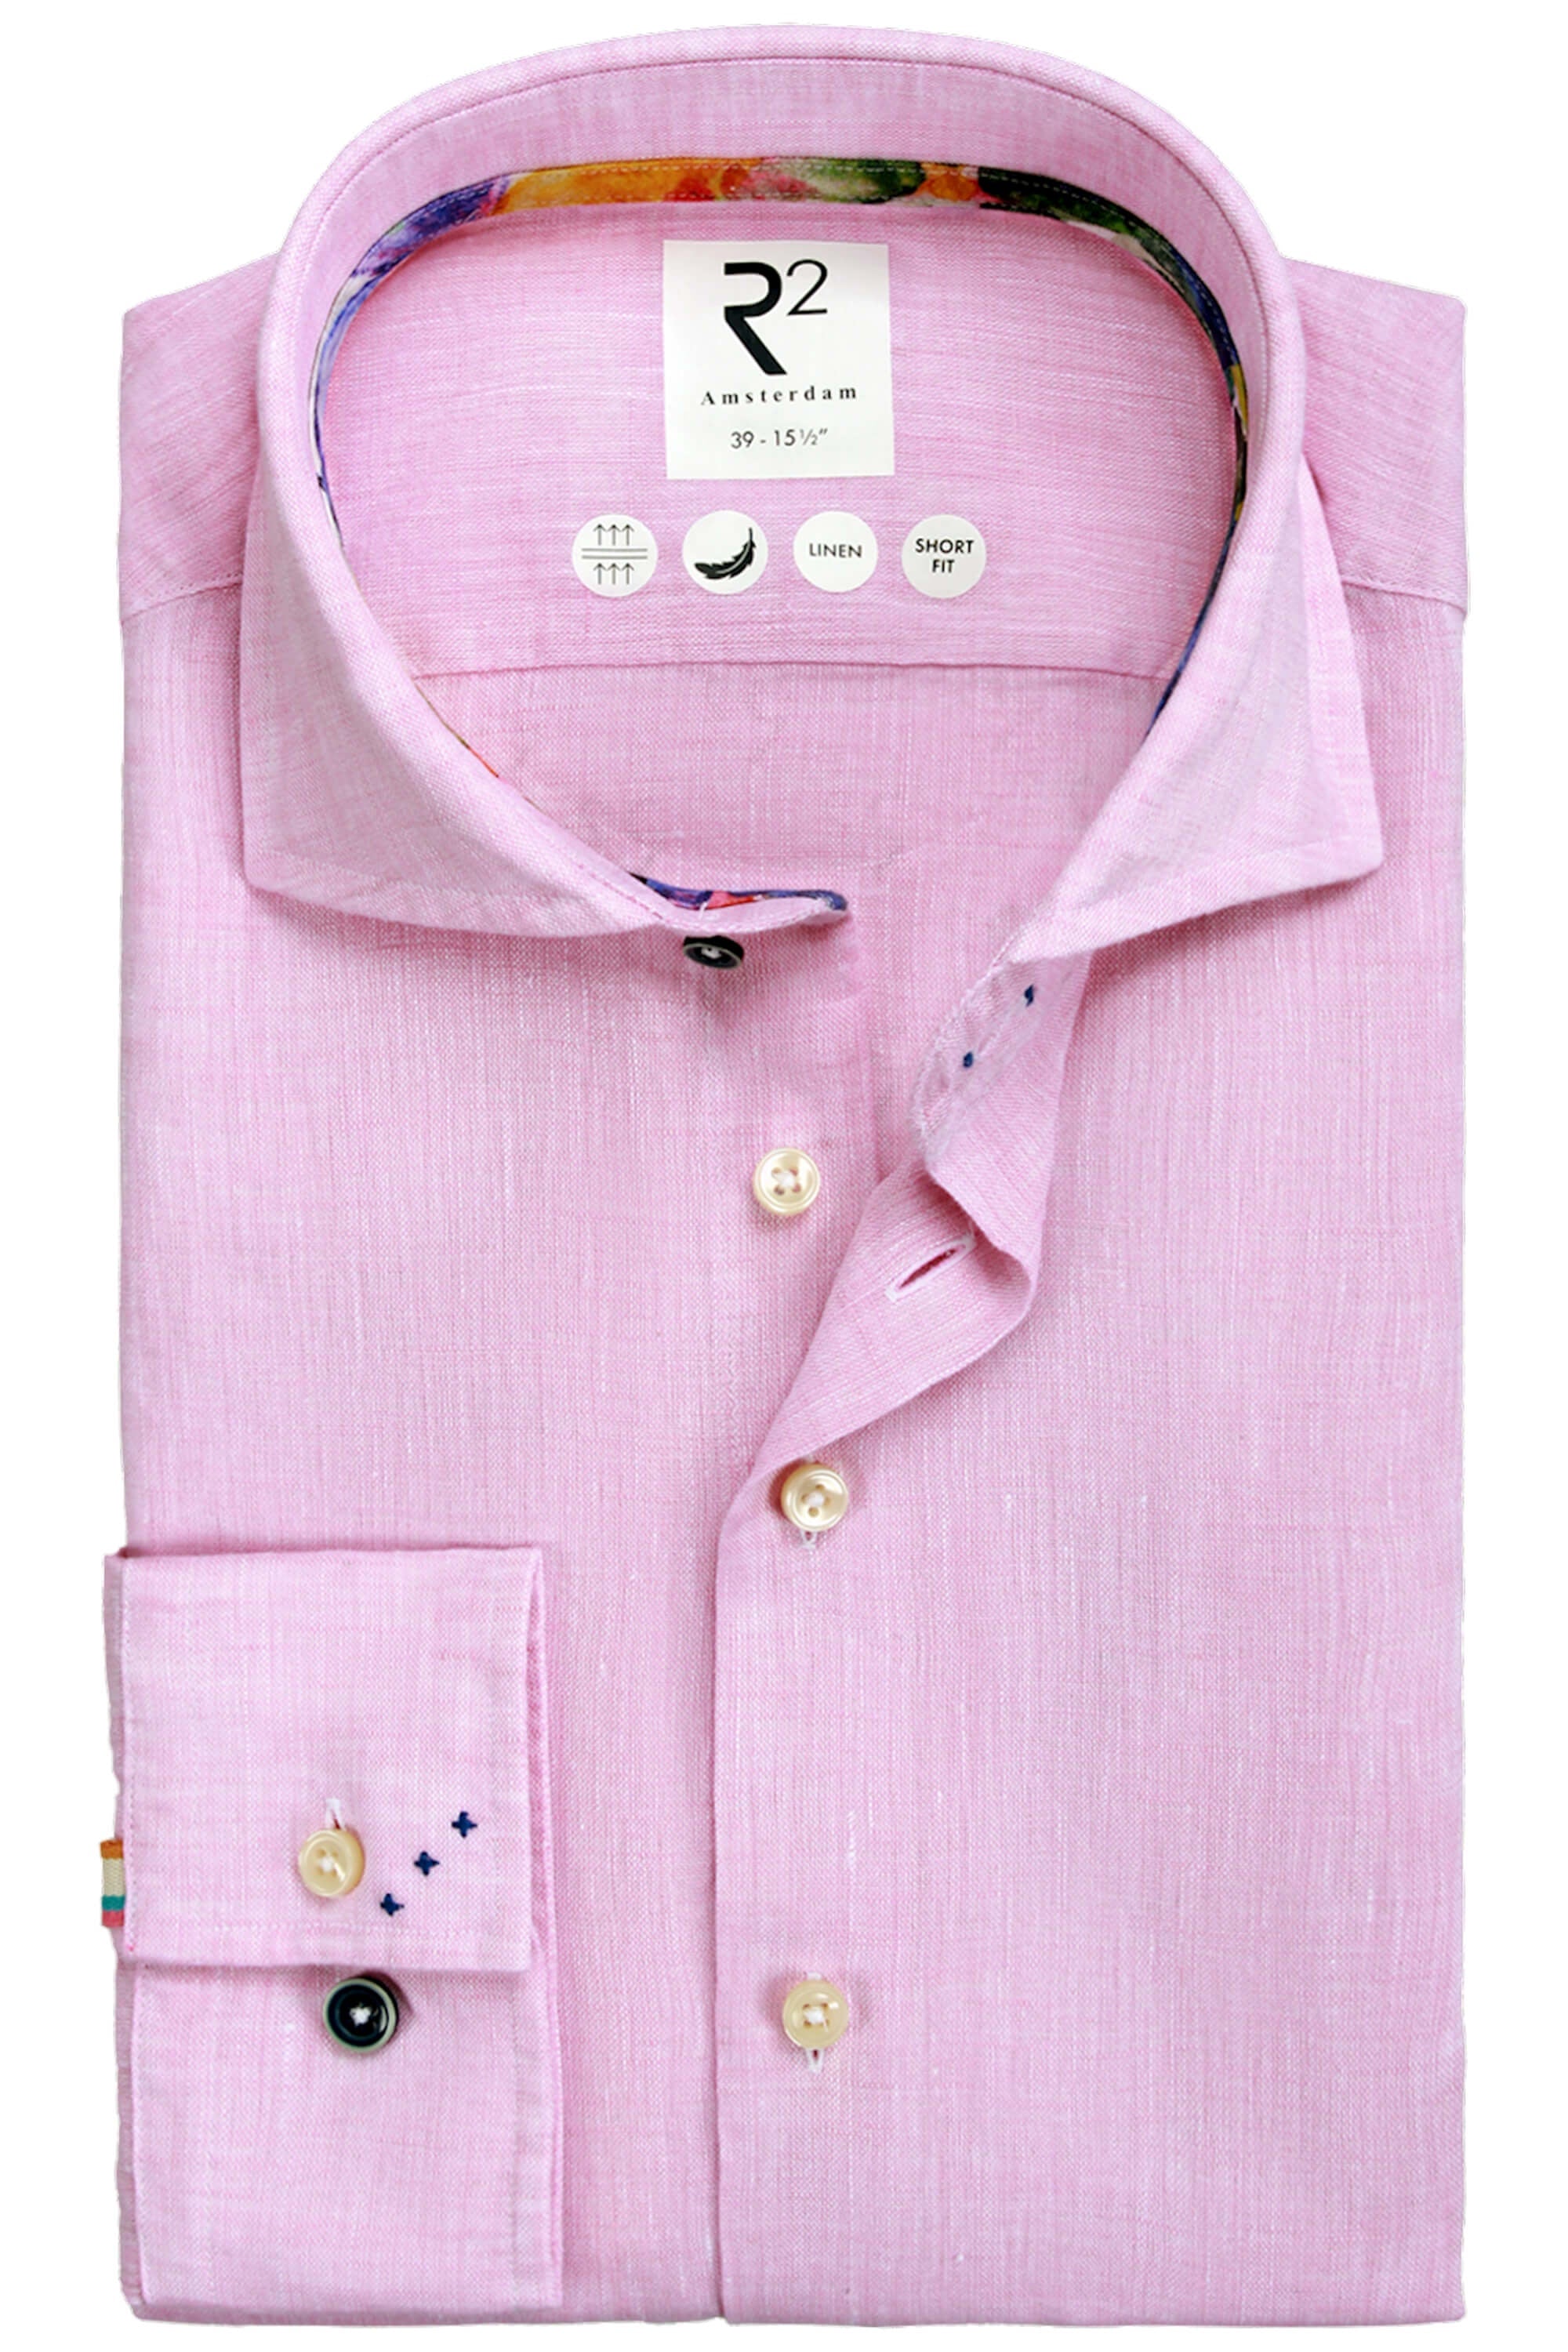 R2 Linen Pink Linen Shirt